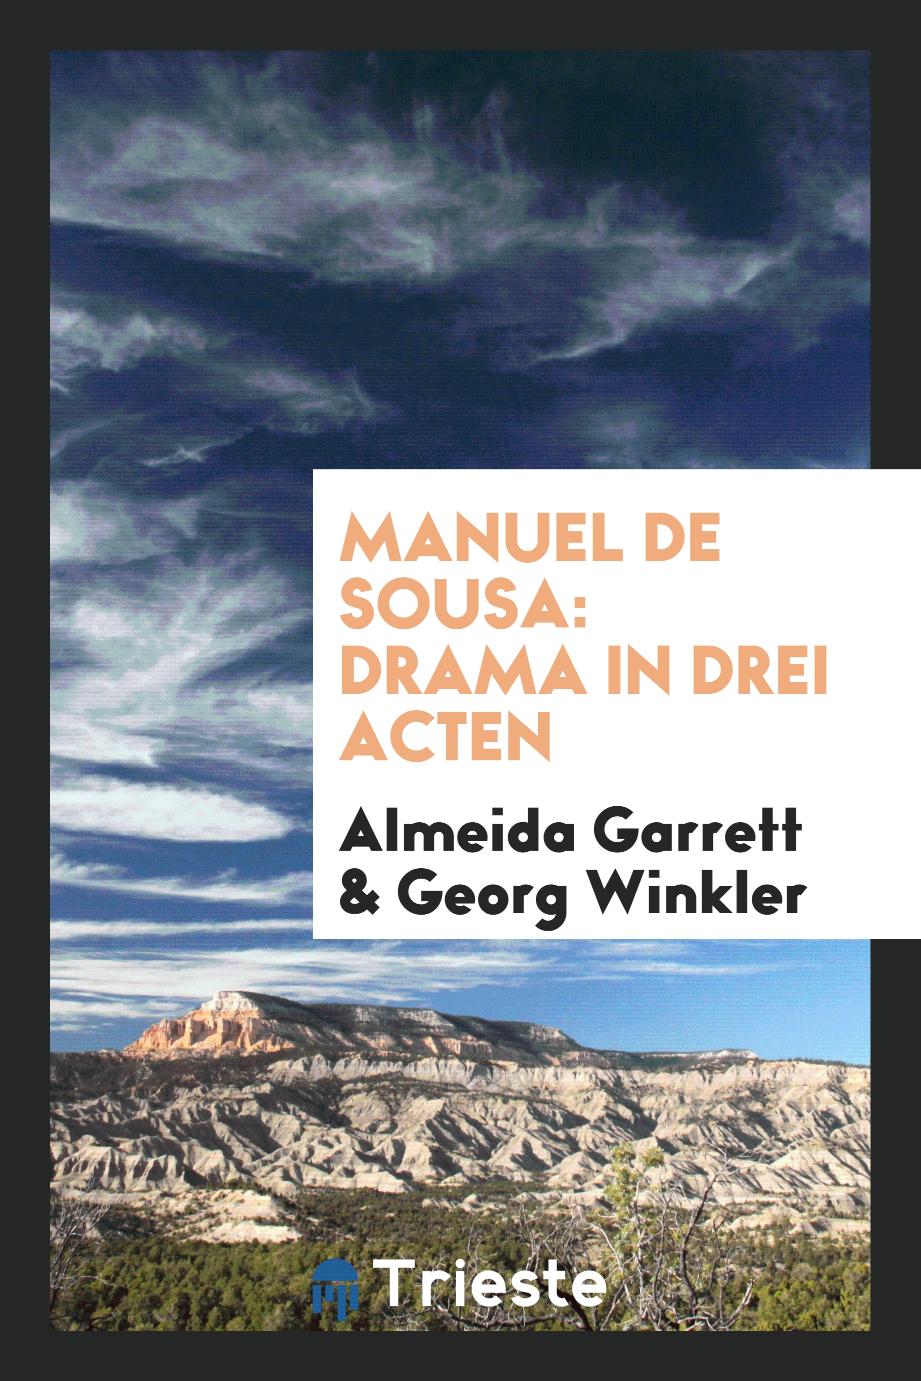 Manuel de Sousa: Drama in drei Acten